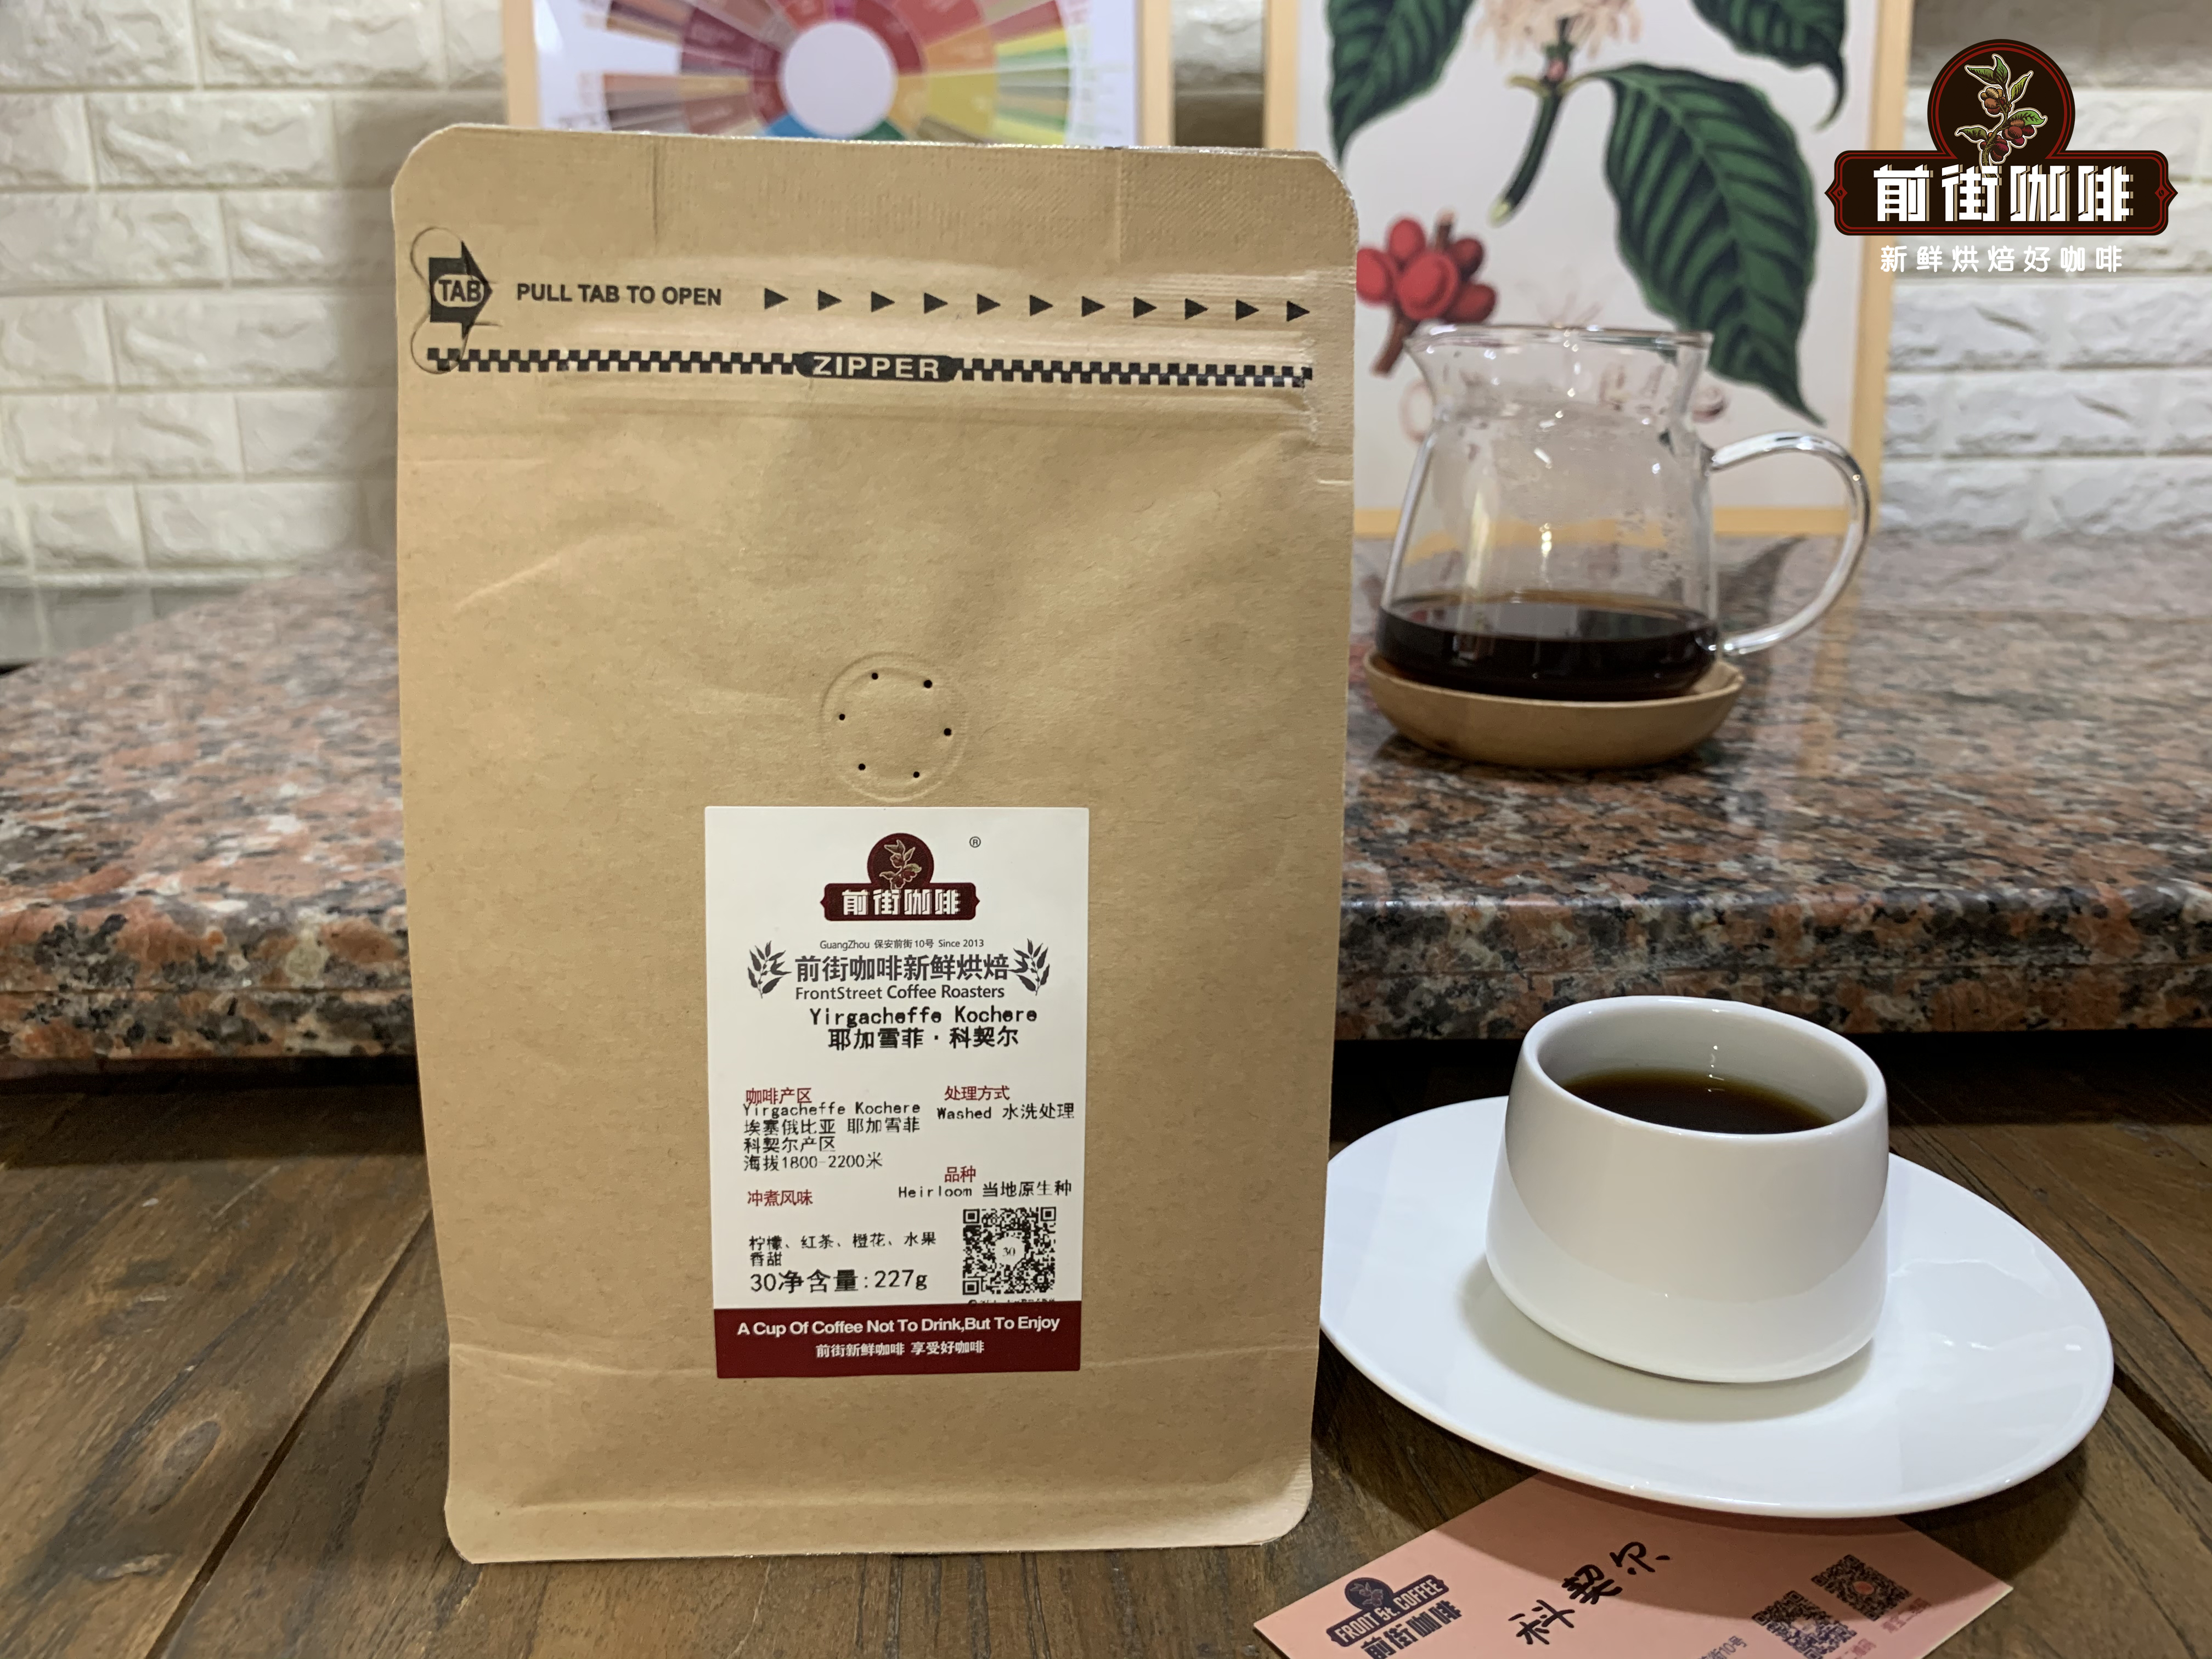 阿拉比卡品種耶加雪菲產區科契爾咖啡的烘焙思路和風味特點介紹